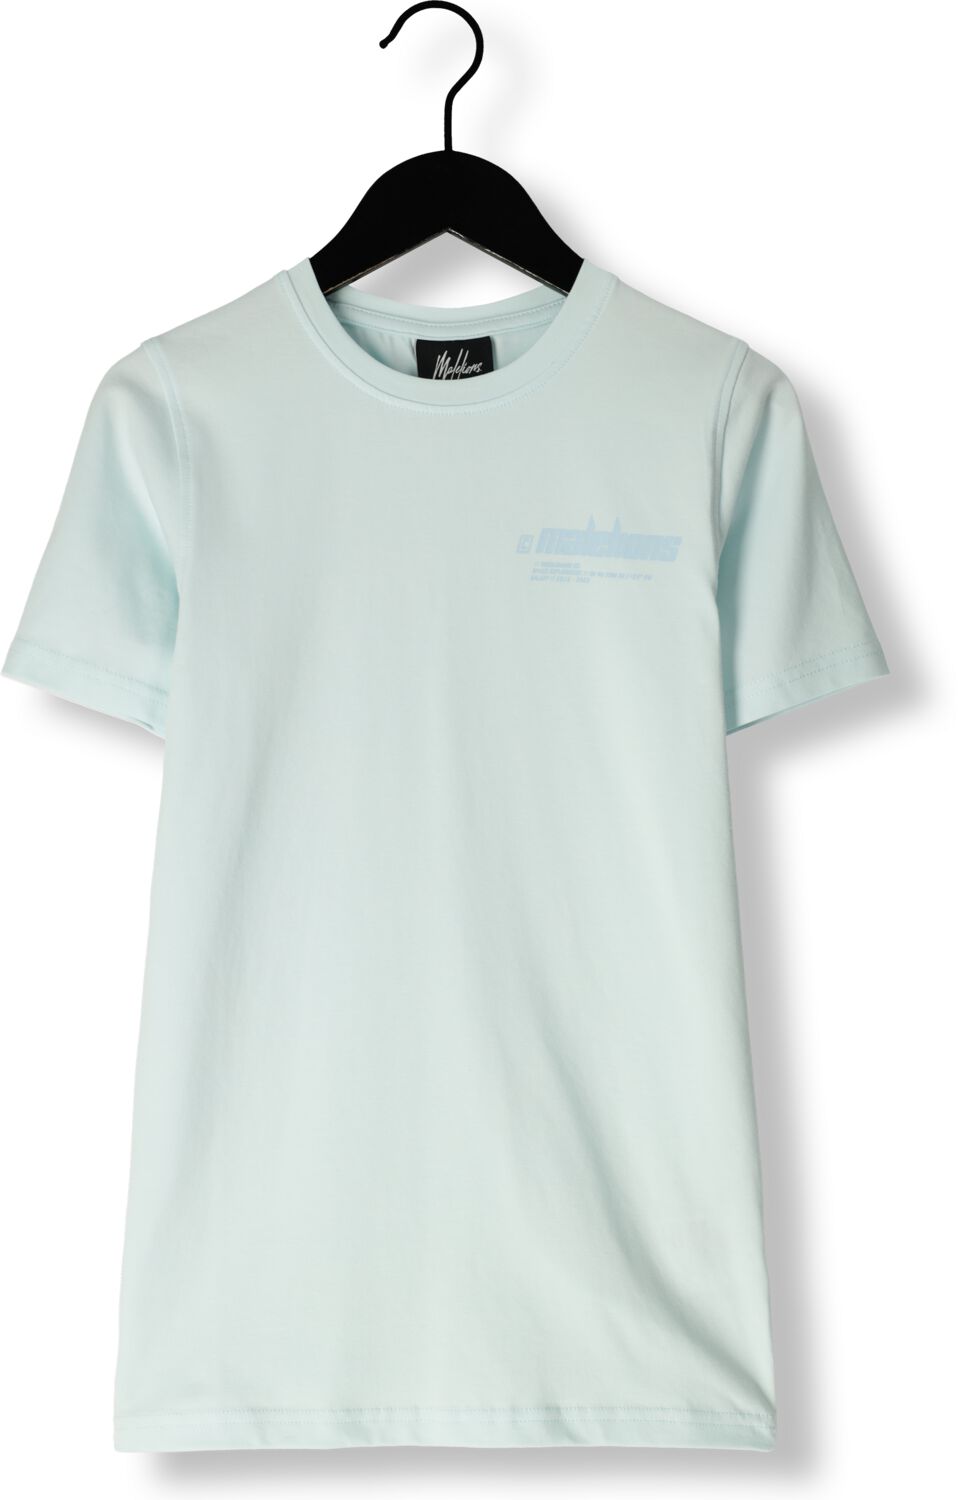 Malelions T-shirt Worldwide met logo blauw Jongens Stretchkatoen Ronde hals 140